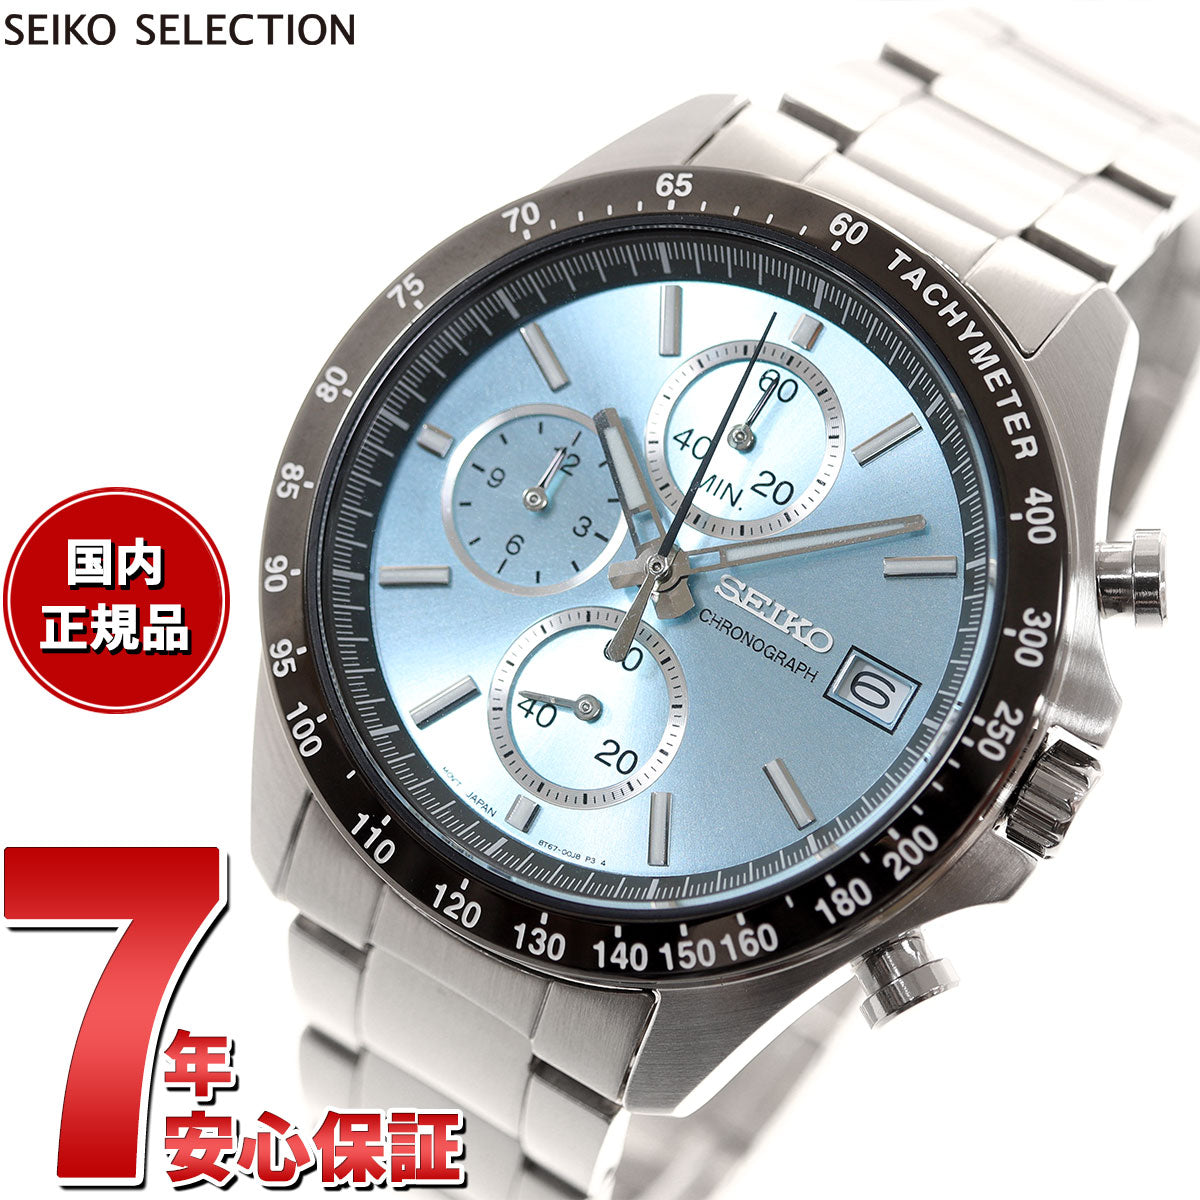 セイコー セレクション SEIKO SELECTION 8Tクロノ SBTR029 腕時計